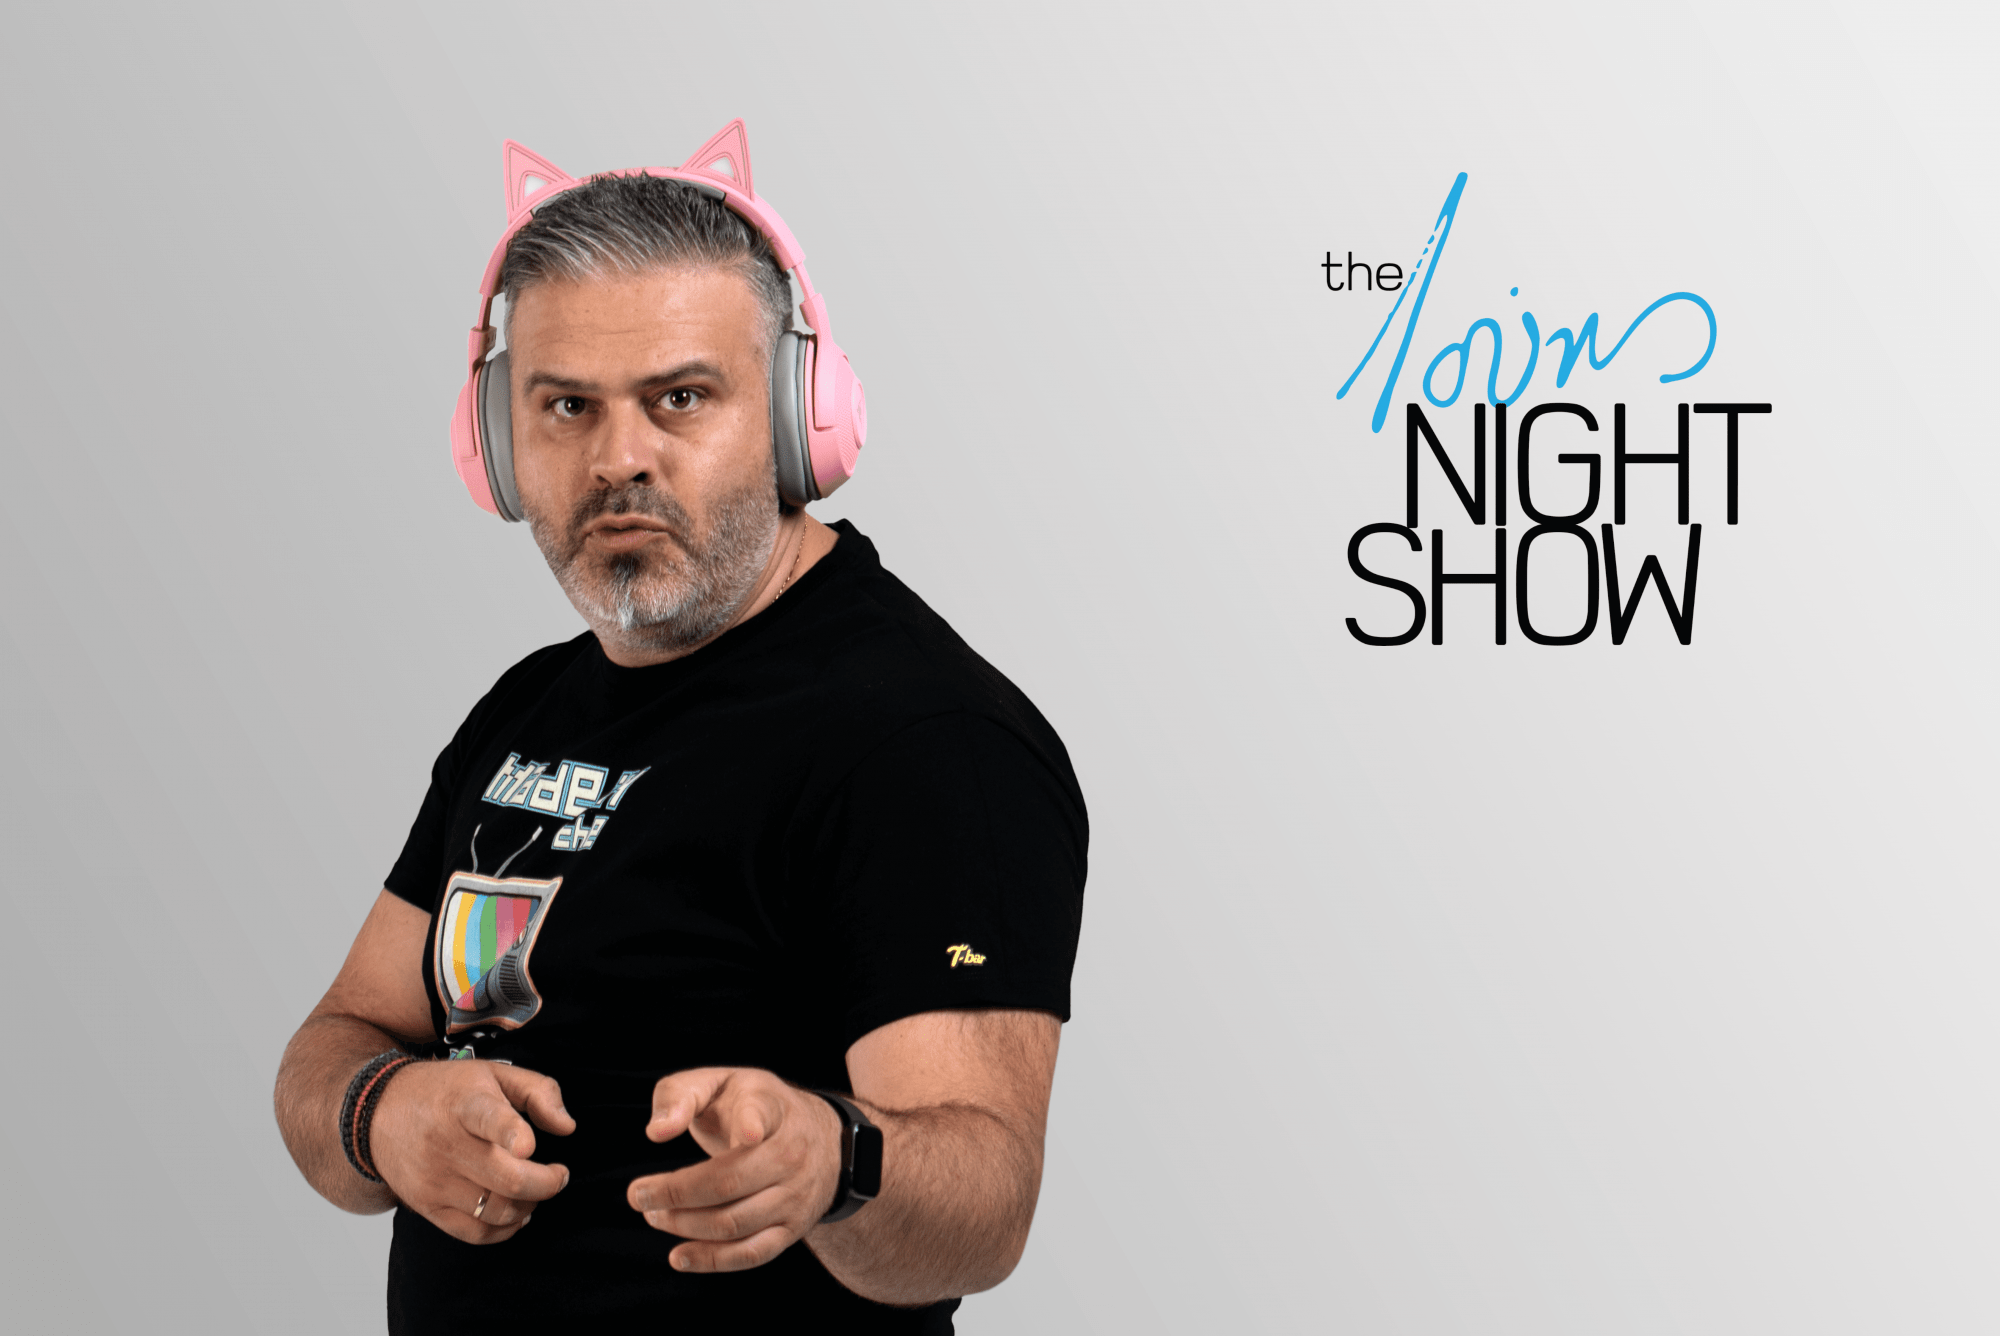 Λούης Night Show: Θα κάνει πρεμιέρα, την Παρασκευή 24 Σεπτεμβρίου στον Alpha Κύπρου